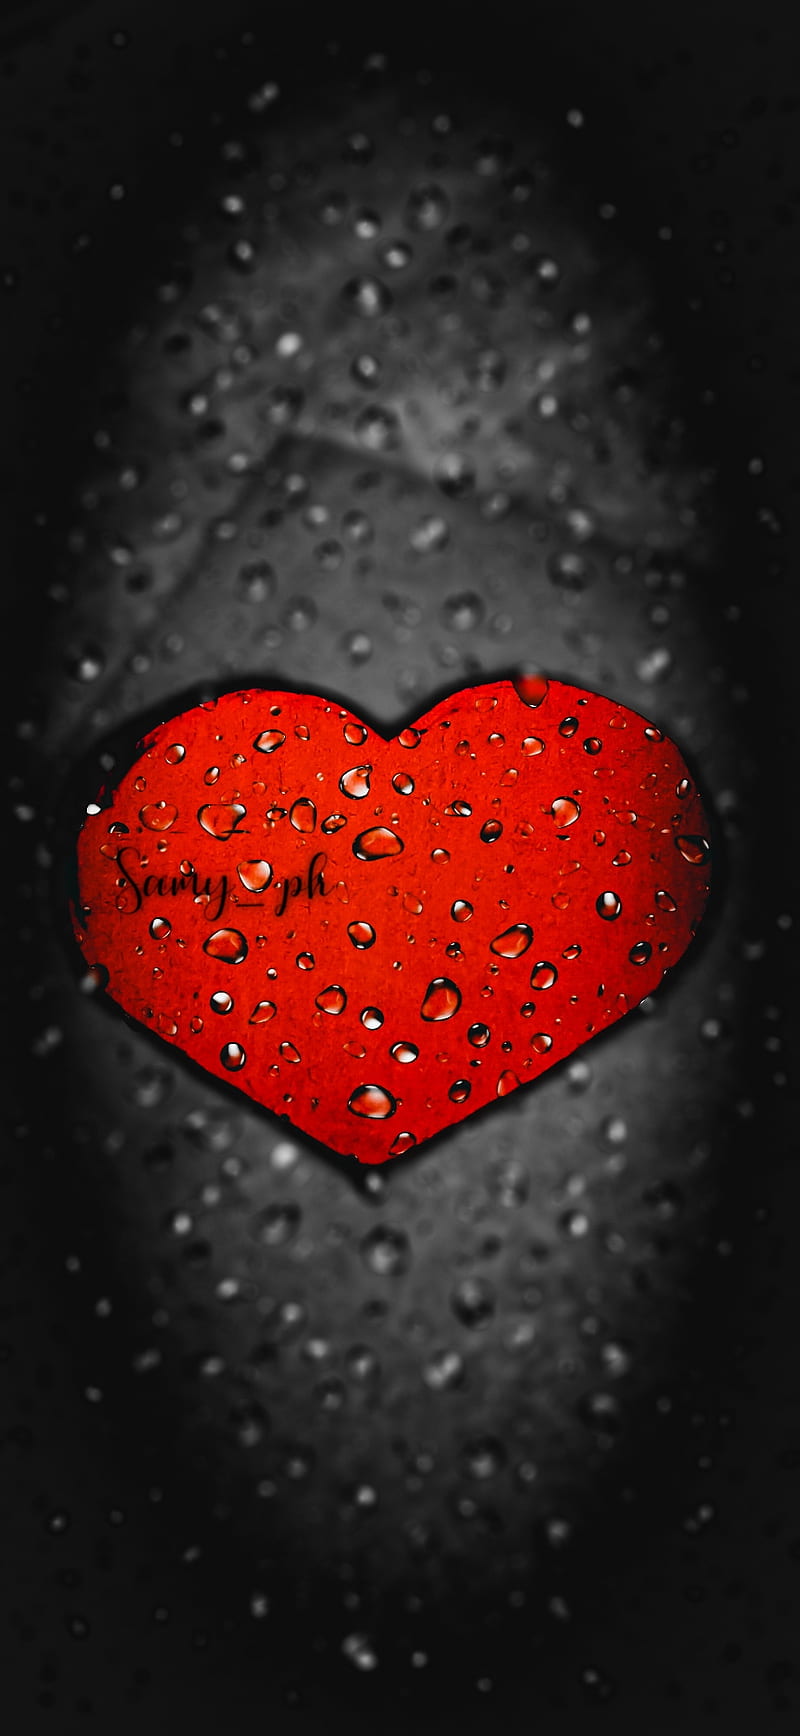 Hình nền tim đỏ - Yêu là thể hiện tình cảm và sự trân trọng. Hãy làm nổi bật những cảm xúc đó với hình nền tim đỏ đẹp lung linh. Điện thoại của bạn sẽ trở nên đầy sức hấp dẫn với bức ảnh ấn tượng này. 